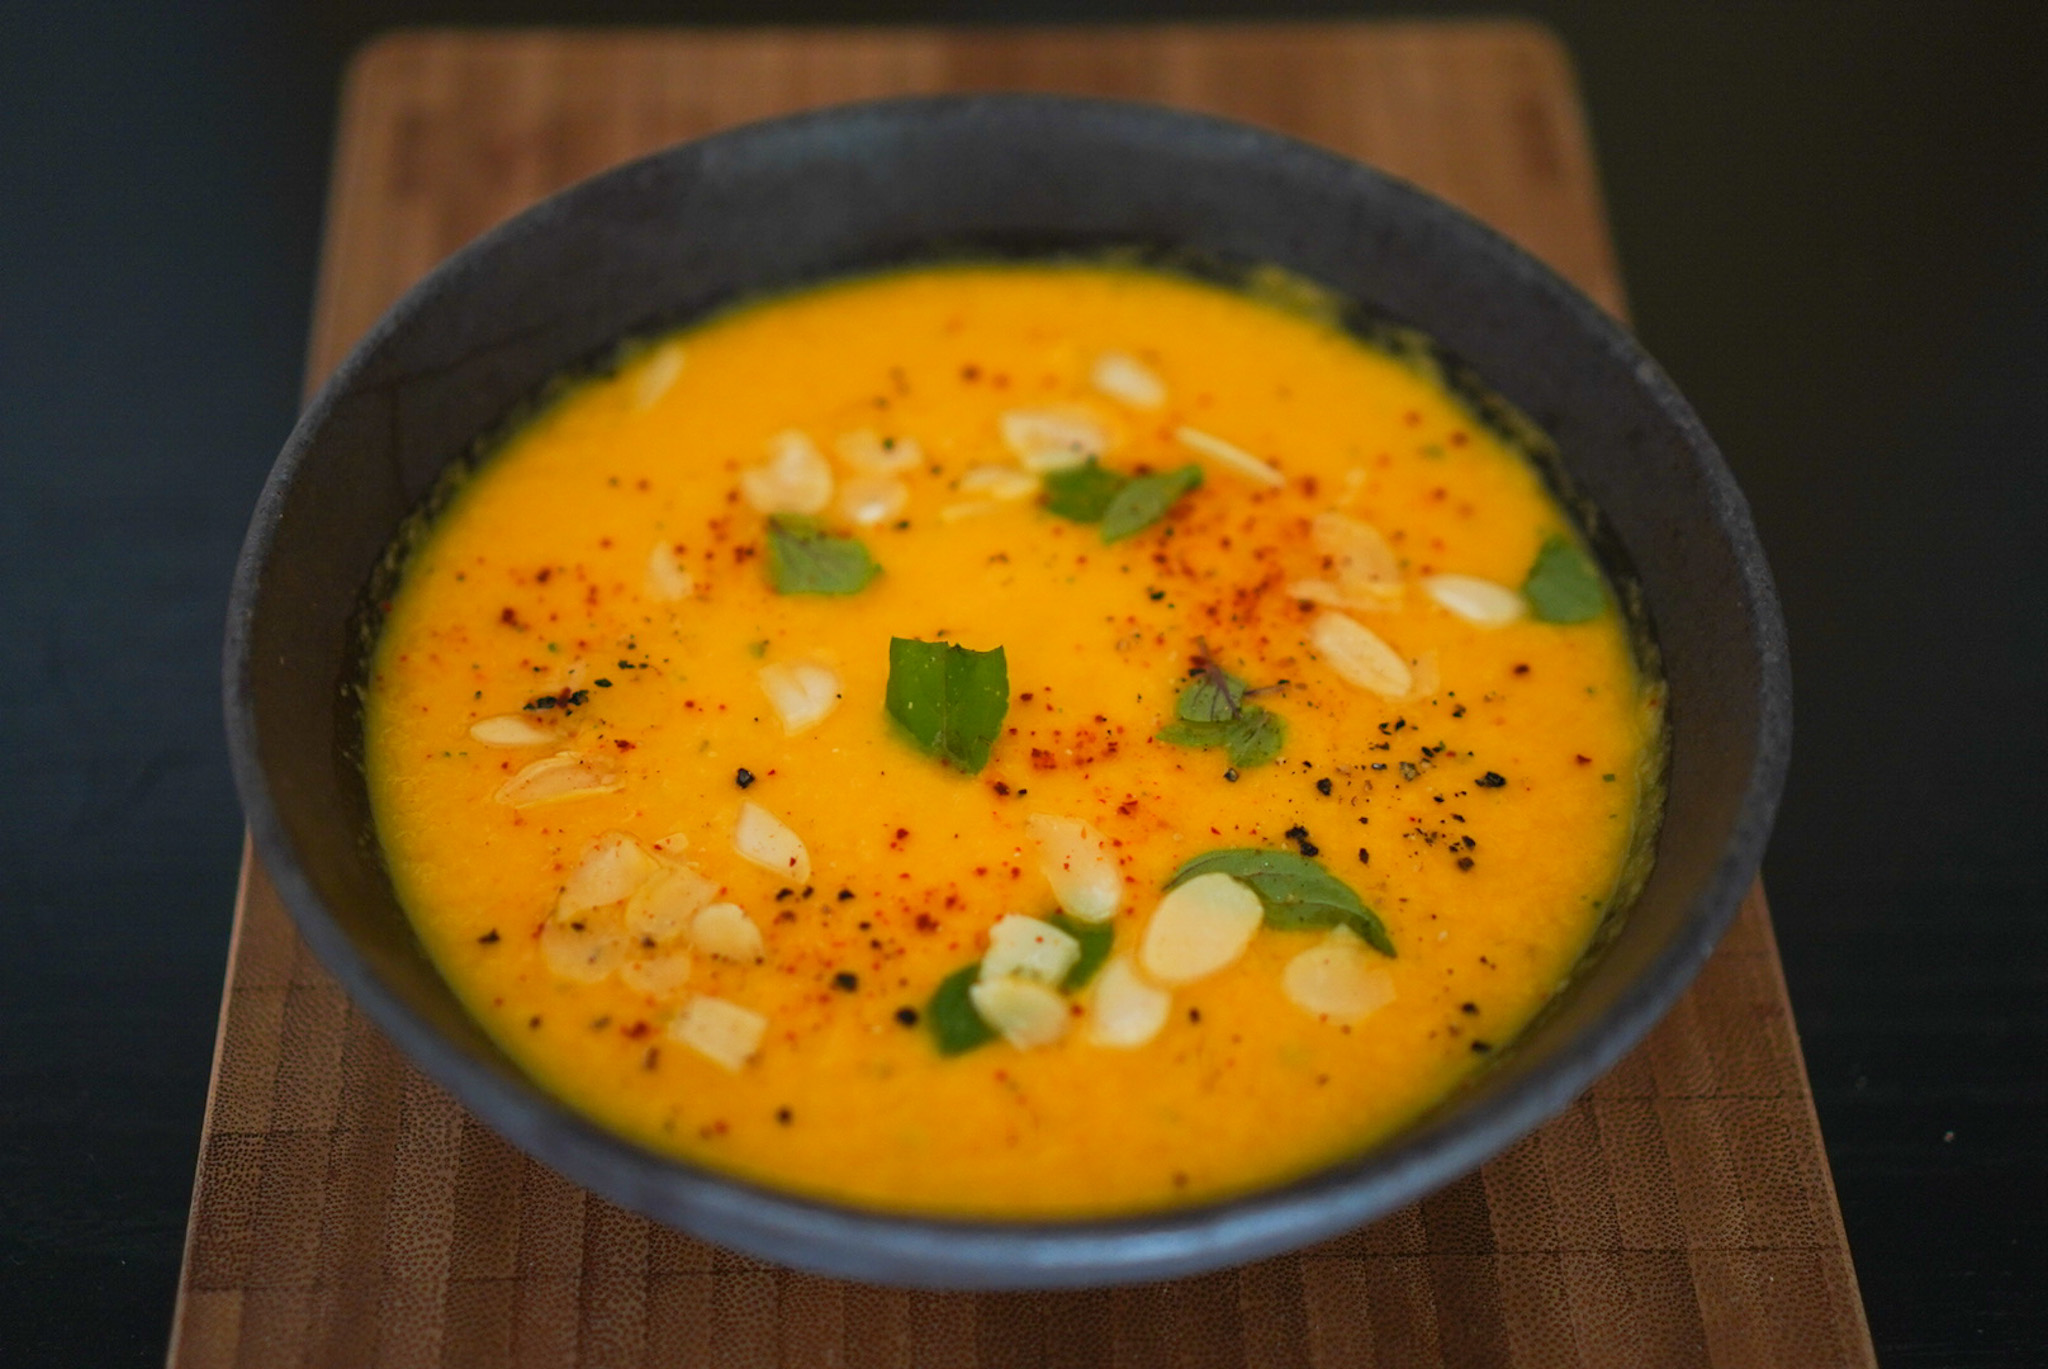 Recette de la soupe froide au melon - HerveCuisine.com